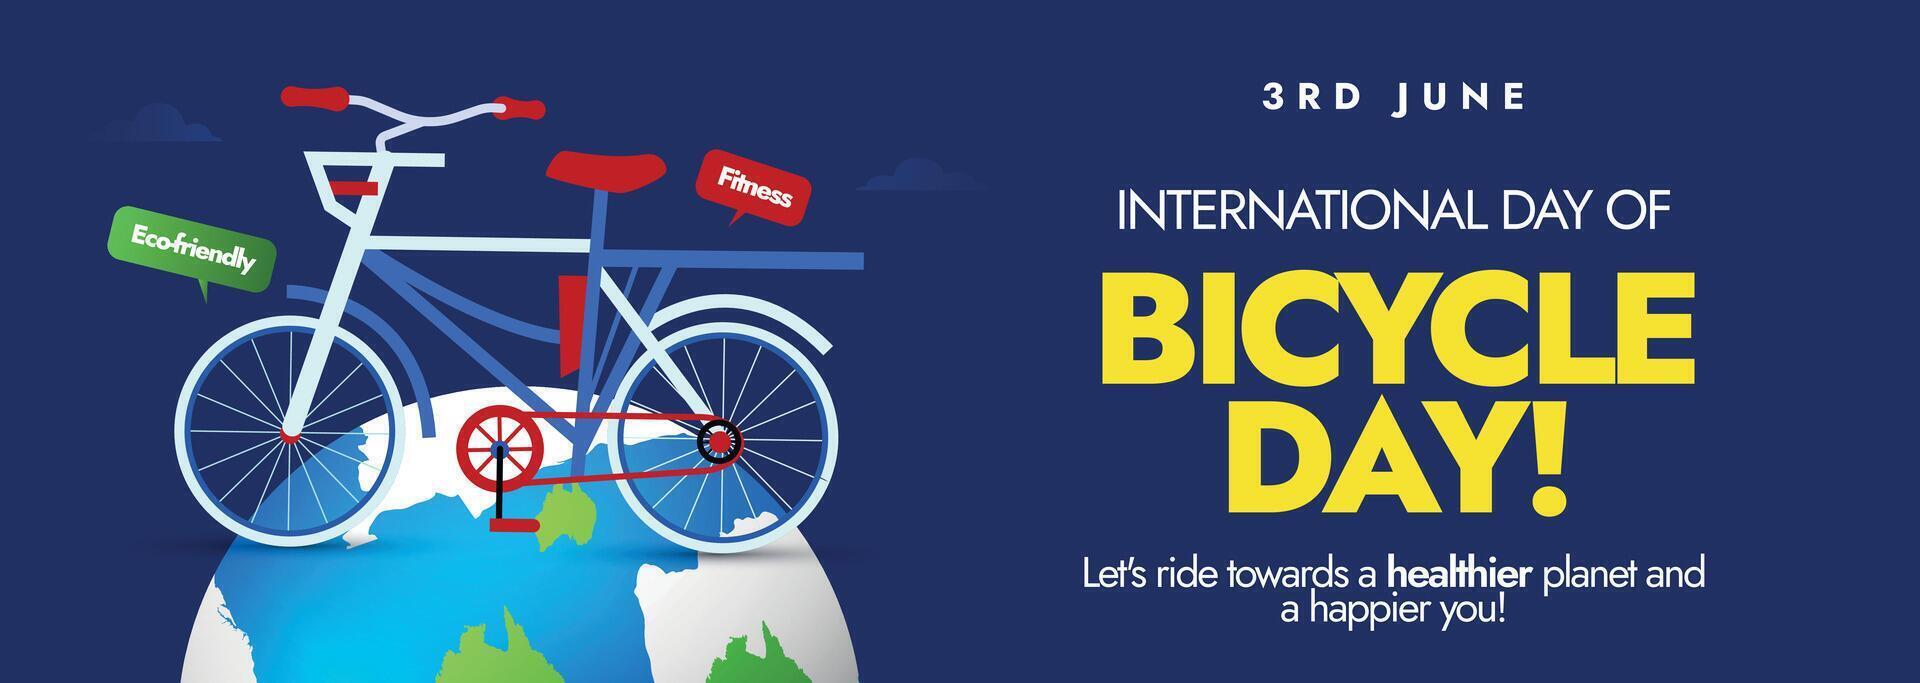 mundo bicicleta día. 3ro junio mundo bicicleta día evento anuncio cubrir bandera, tarjeta, enviar con un bicicleta en tierra globo. esta día aumento conciencia acerca de bicicletas como sostenible modo de transporte. vector